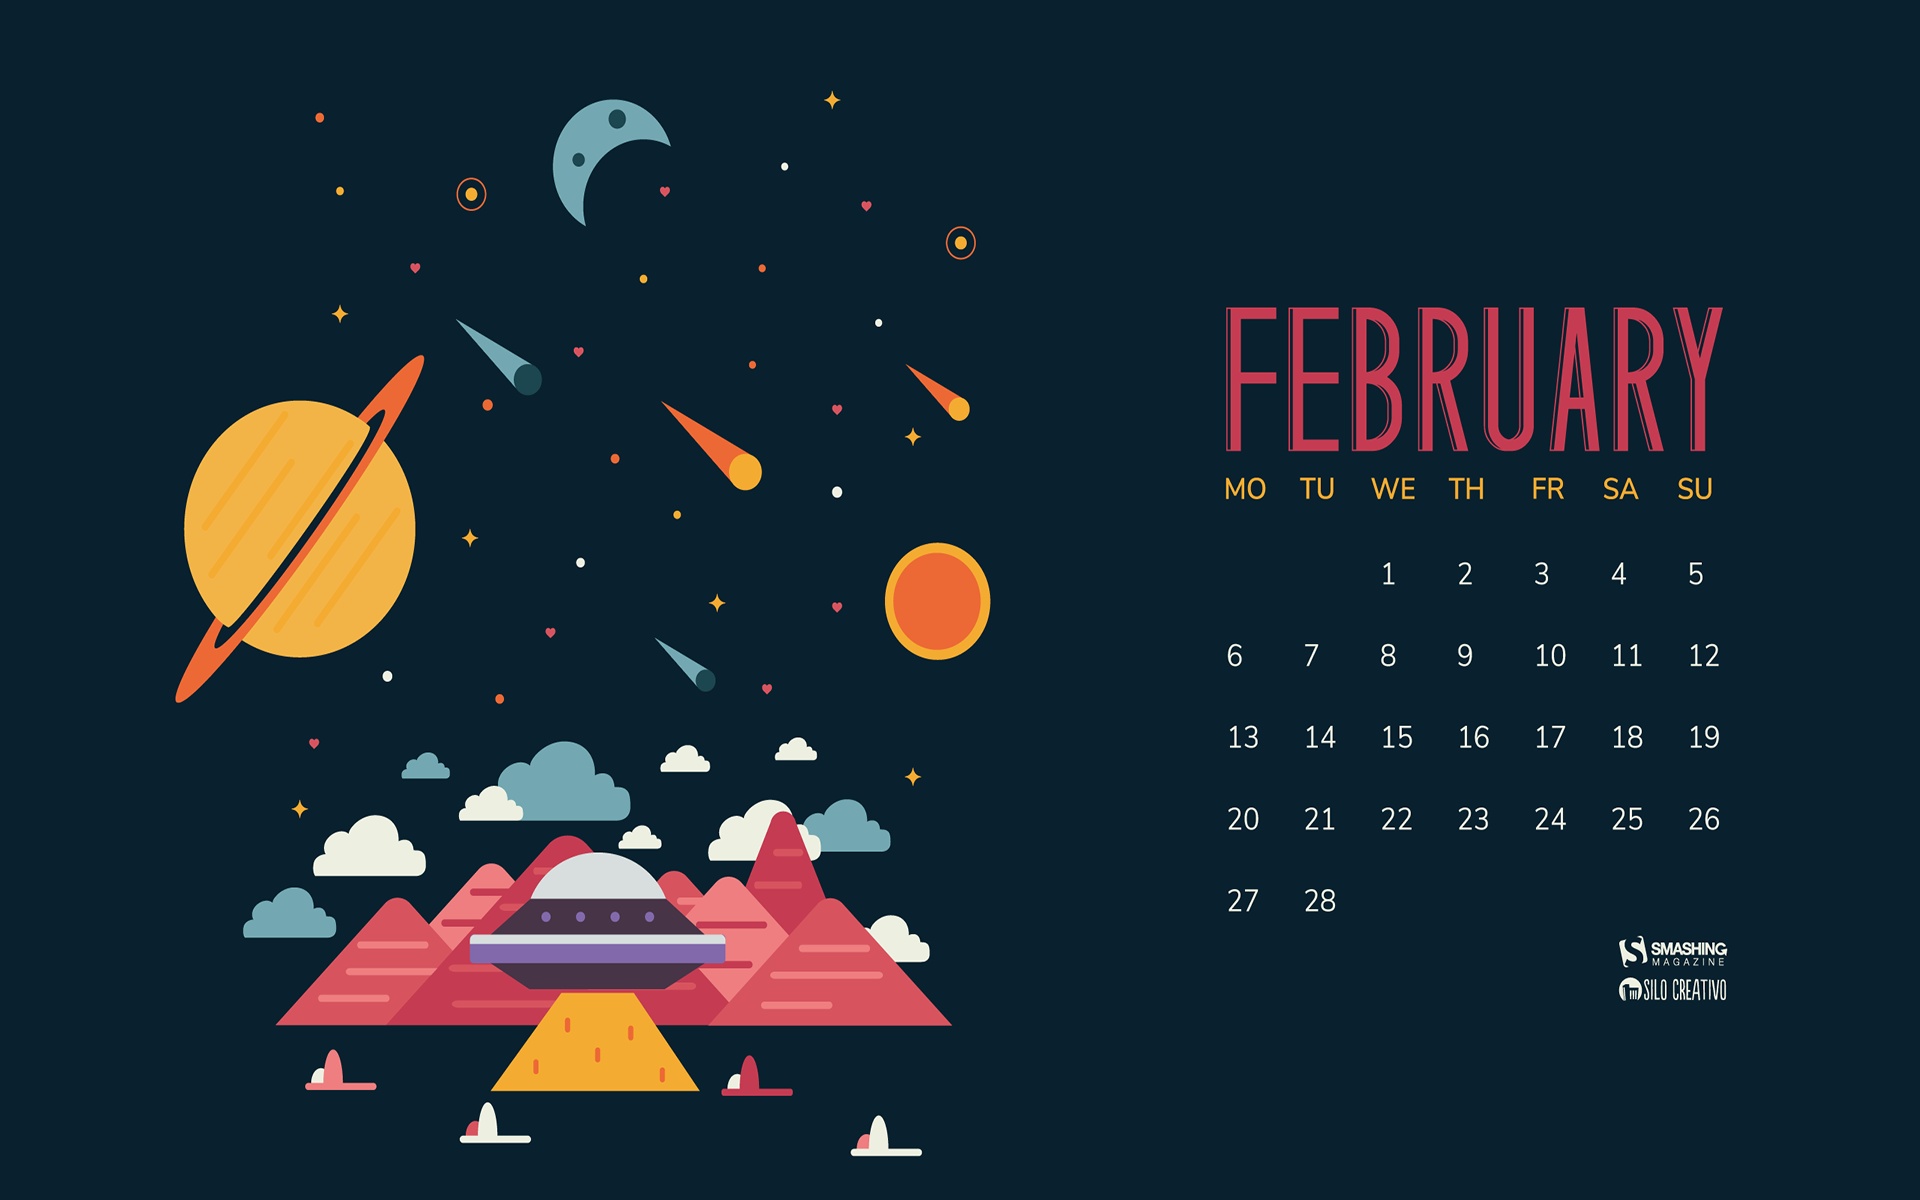 Month Year Calendar Wallpapers - February 2019 Calendar Desktop Backgrounds  - 1920x1200 Wallpaper 